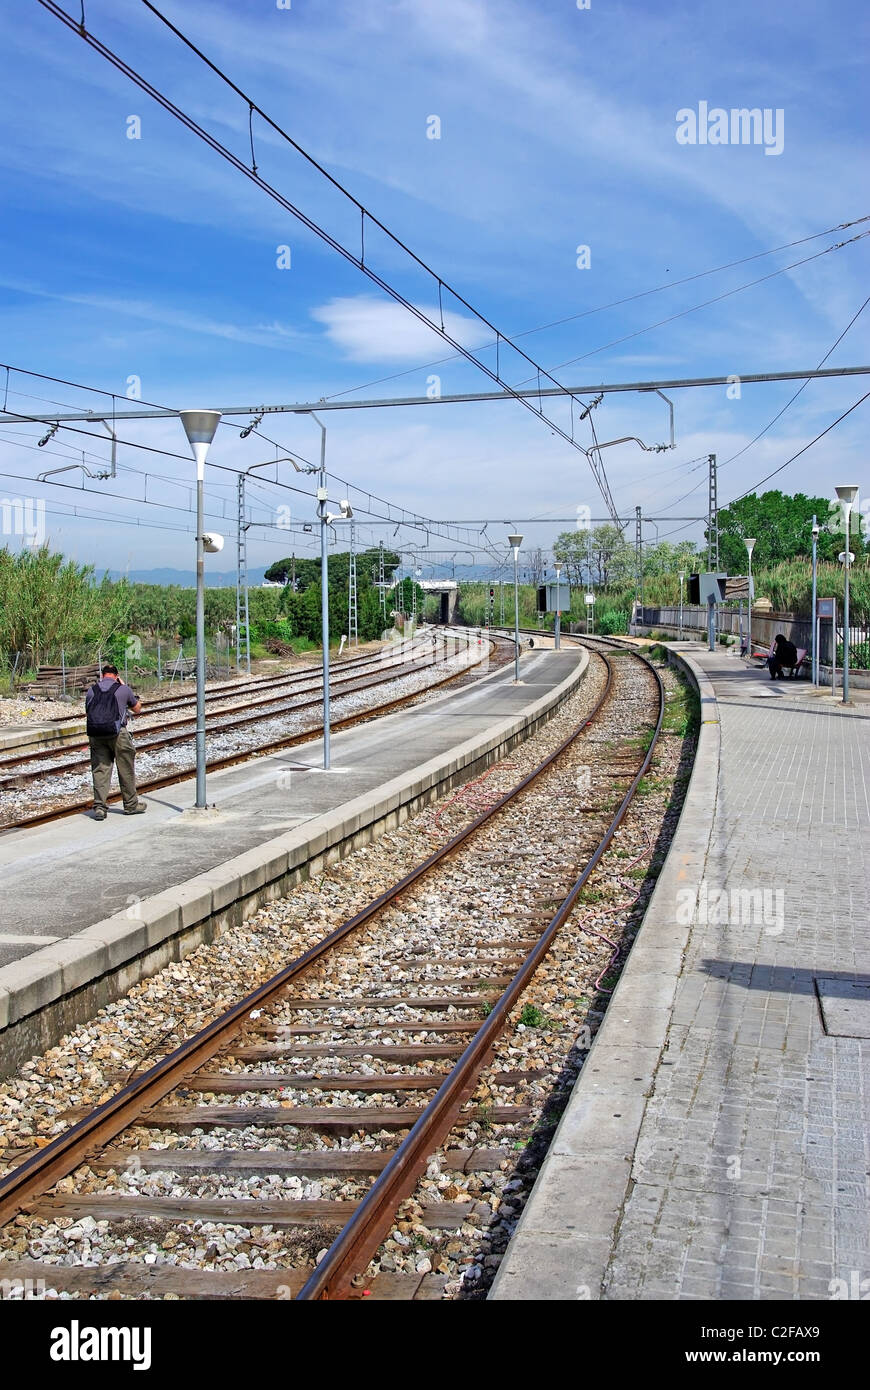 La gare de voie ferrée en Blanes, Espagne. Banque D'Images